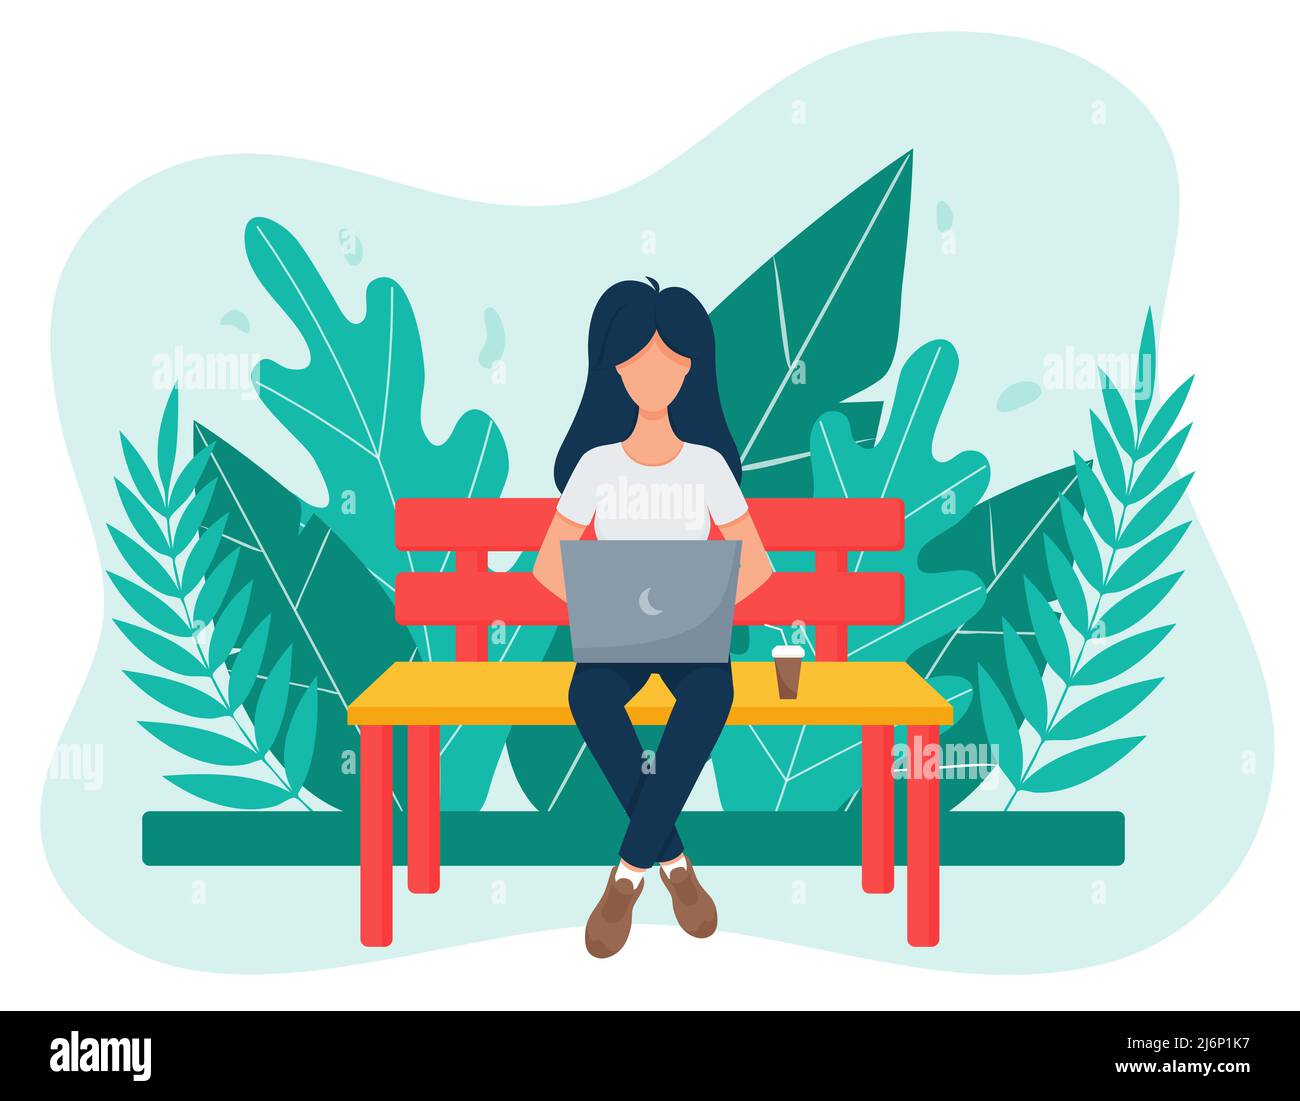 Una freelance femminile con capelli scuri si siede a gambe incrociate su una panca Park e funziona con un computer portatile. Il concetto di lavoro e studio a distanza. Sfondo con lea Illustrazione Vettoriale